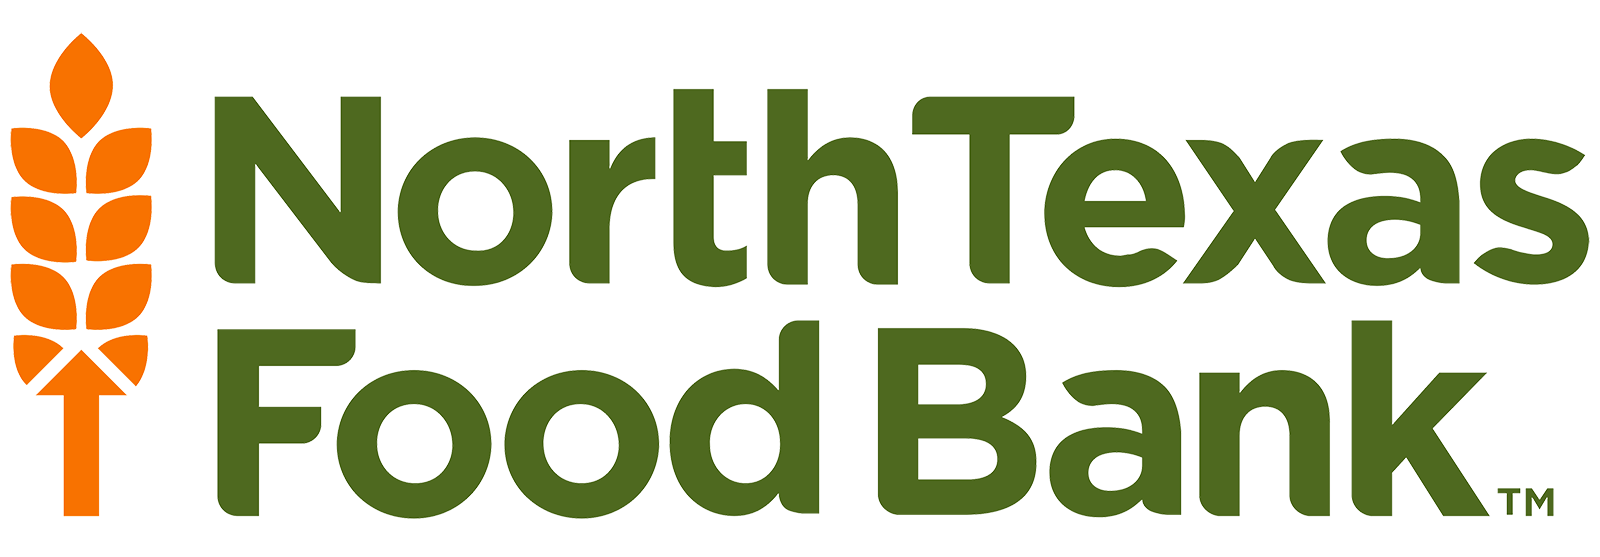 North Texas Food Bank